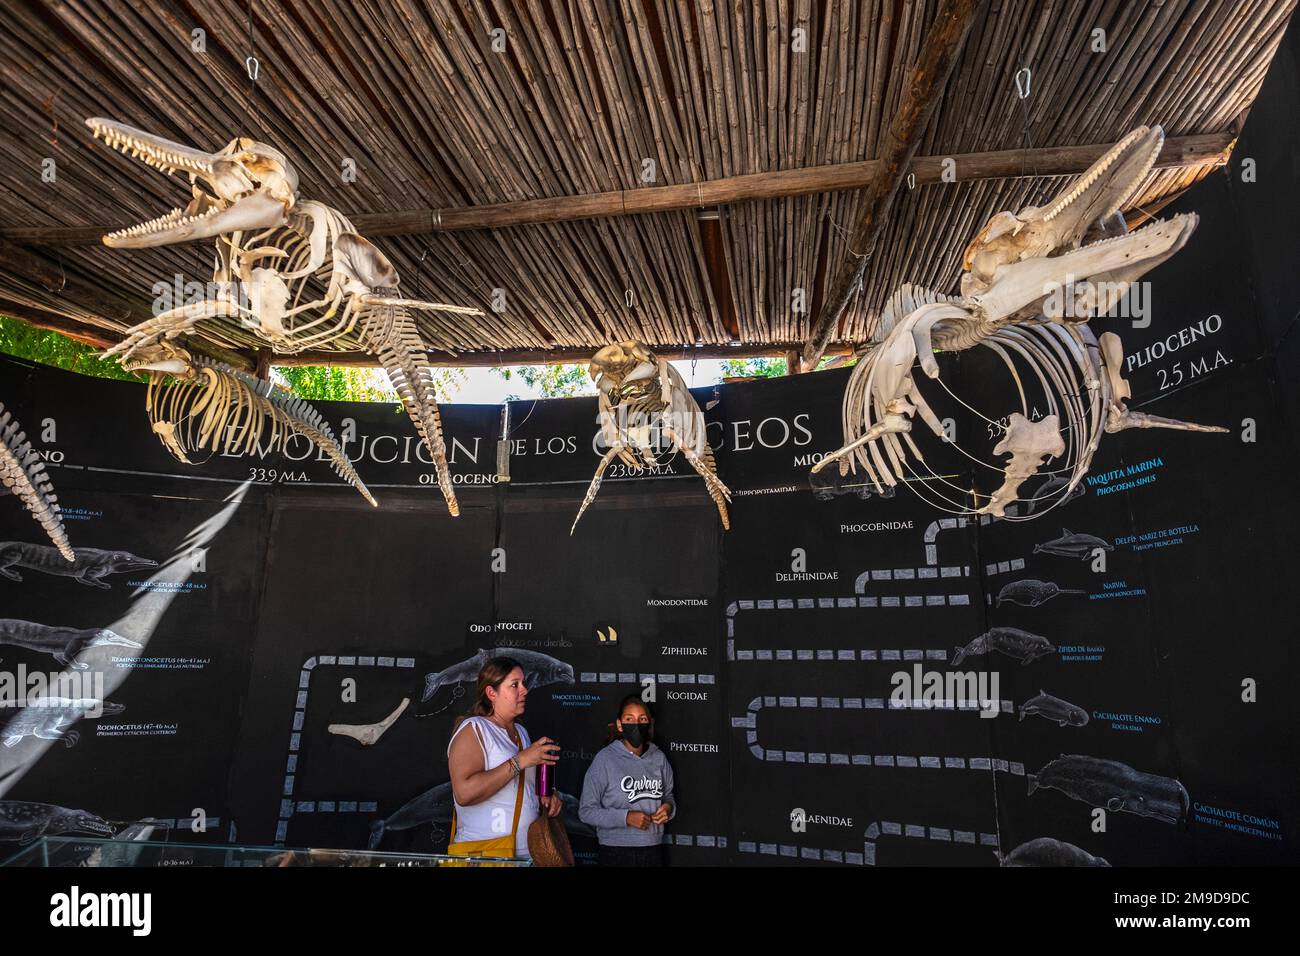 Scheletri di delfini in mostra al Museo de la Ballena, la Paz, Baja California, Messico Foto Stock